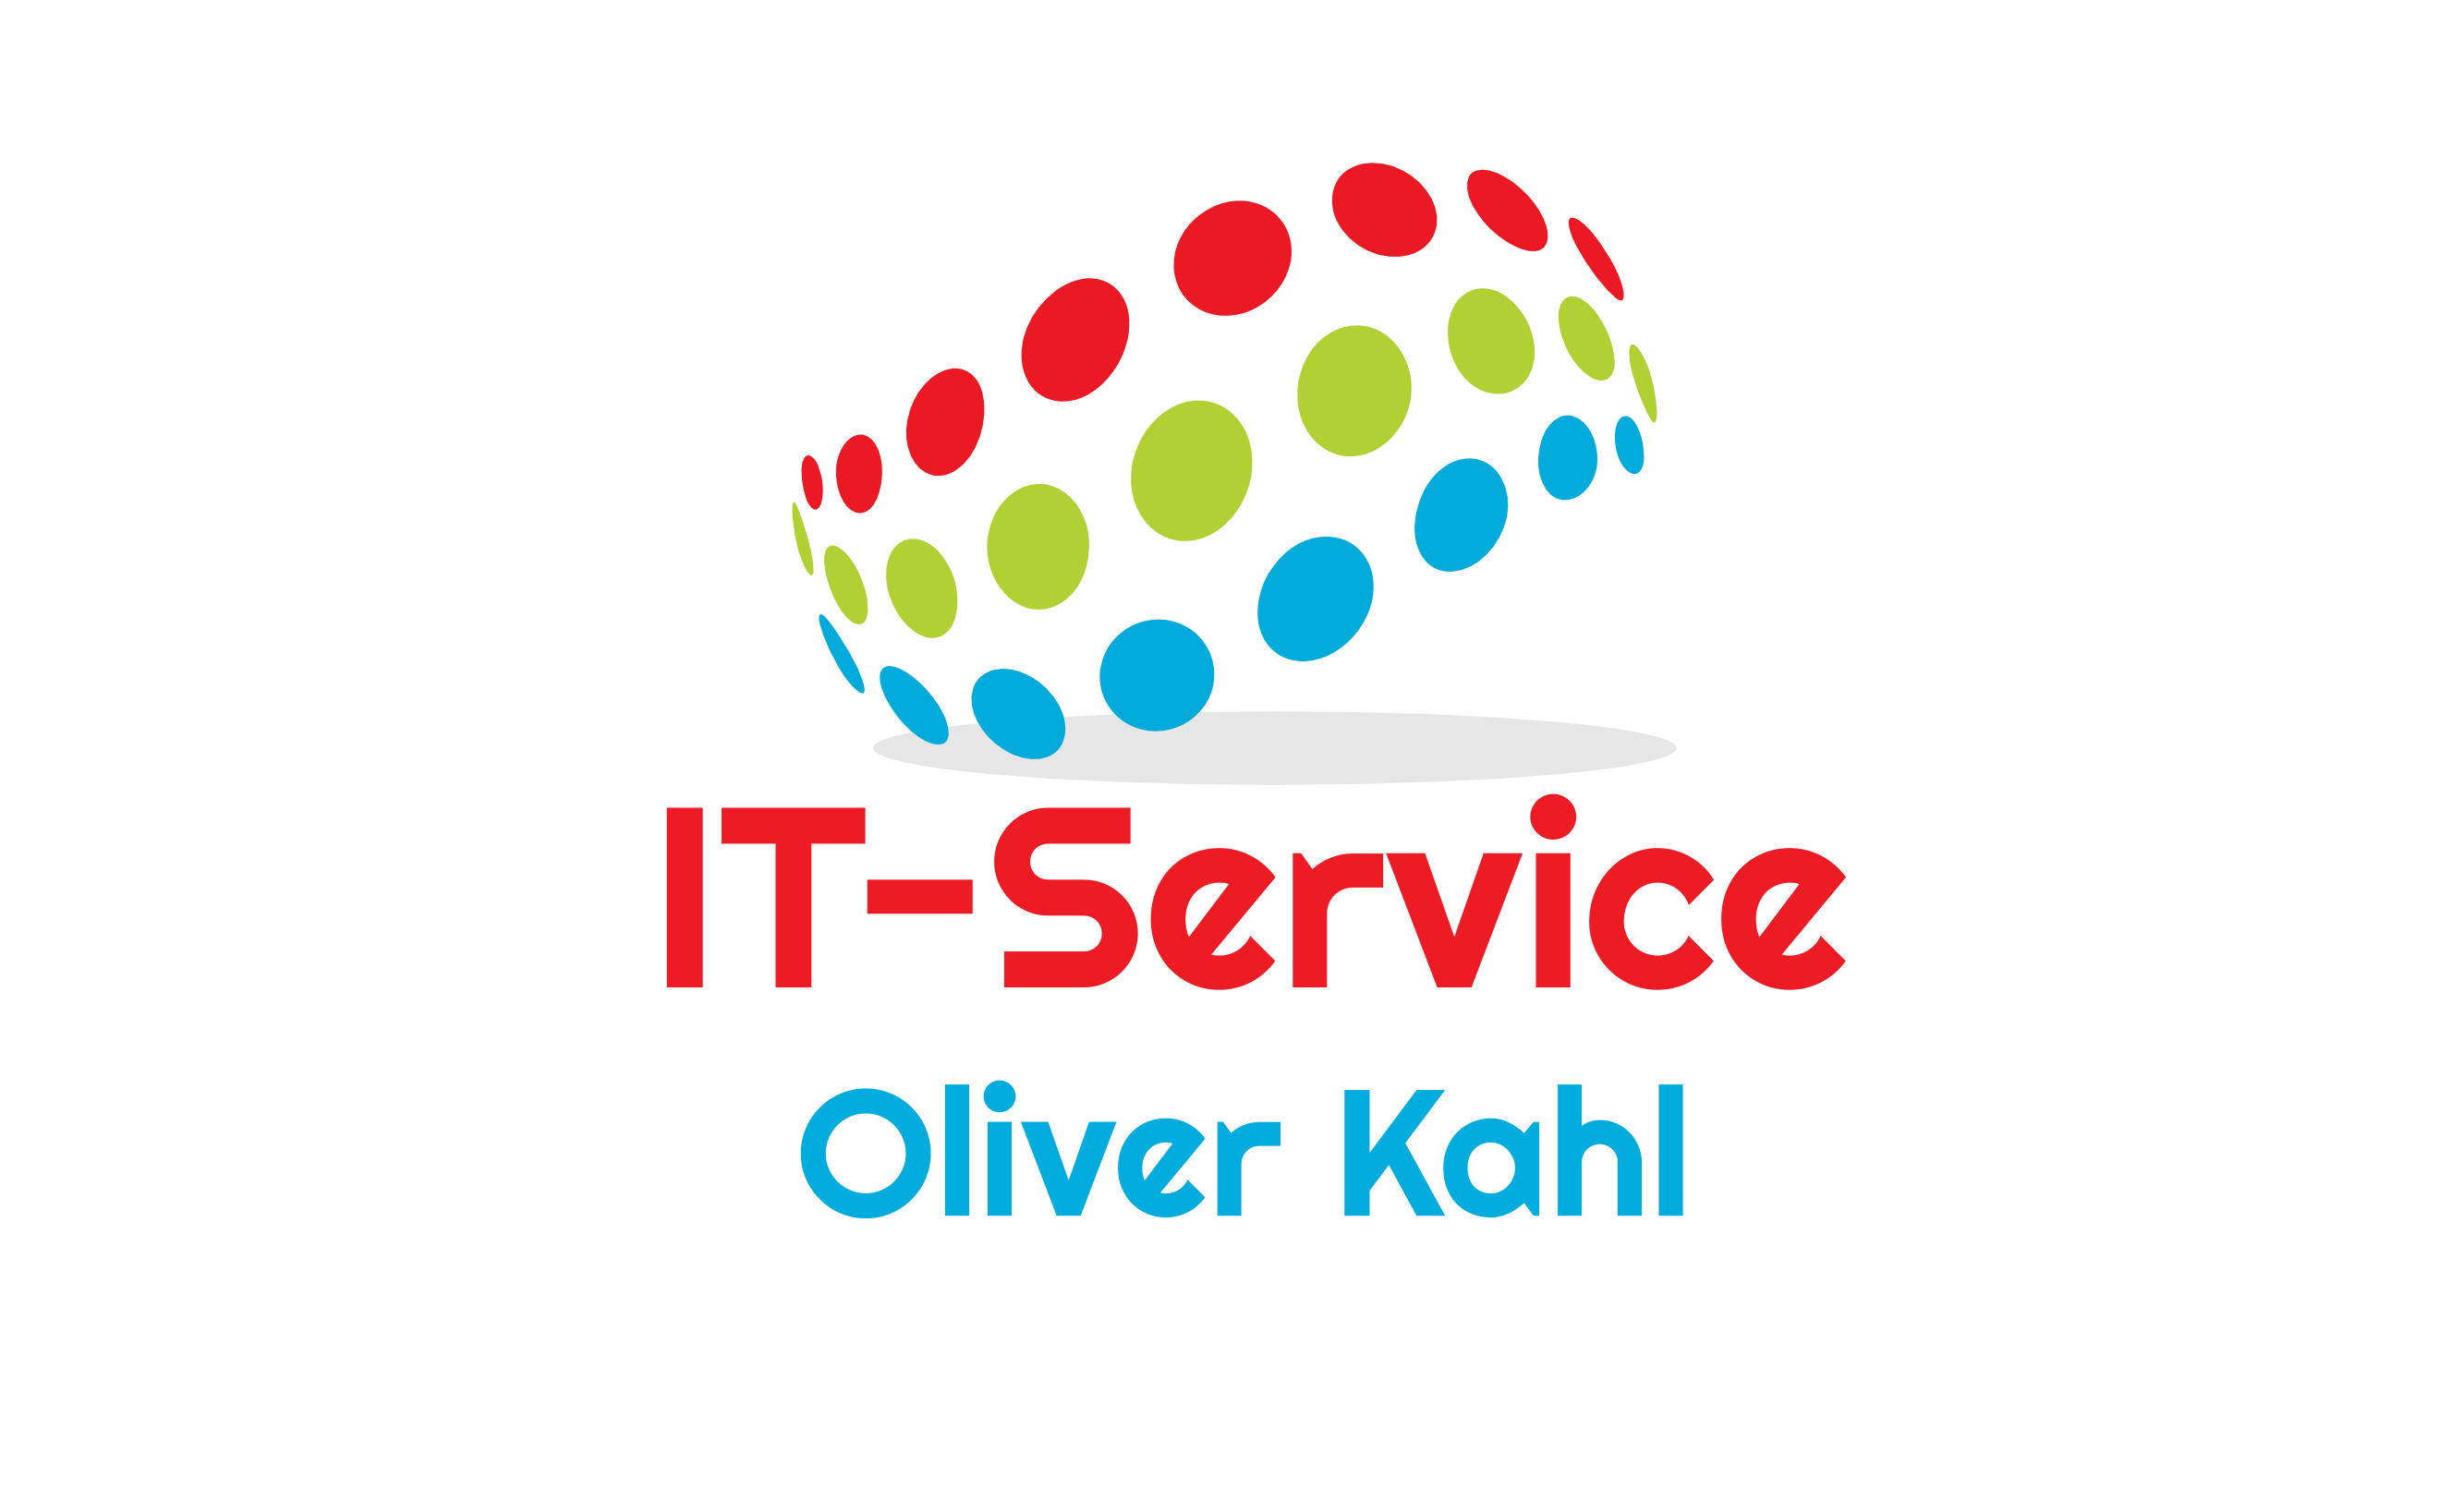 IT Service Oliver Kahl